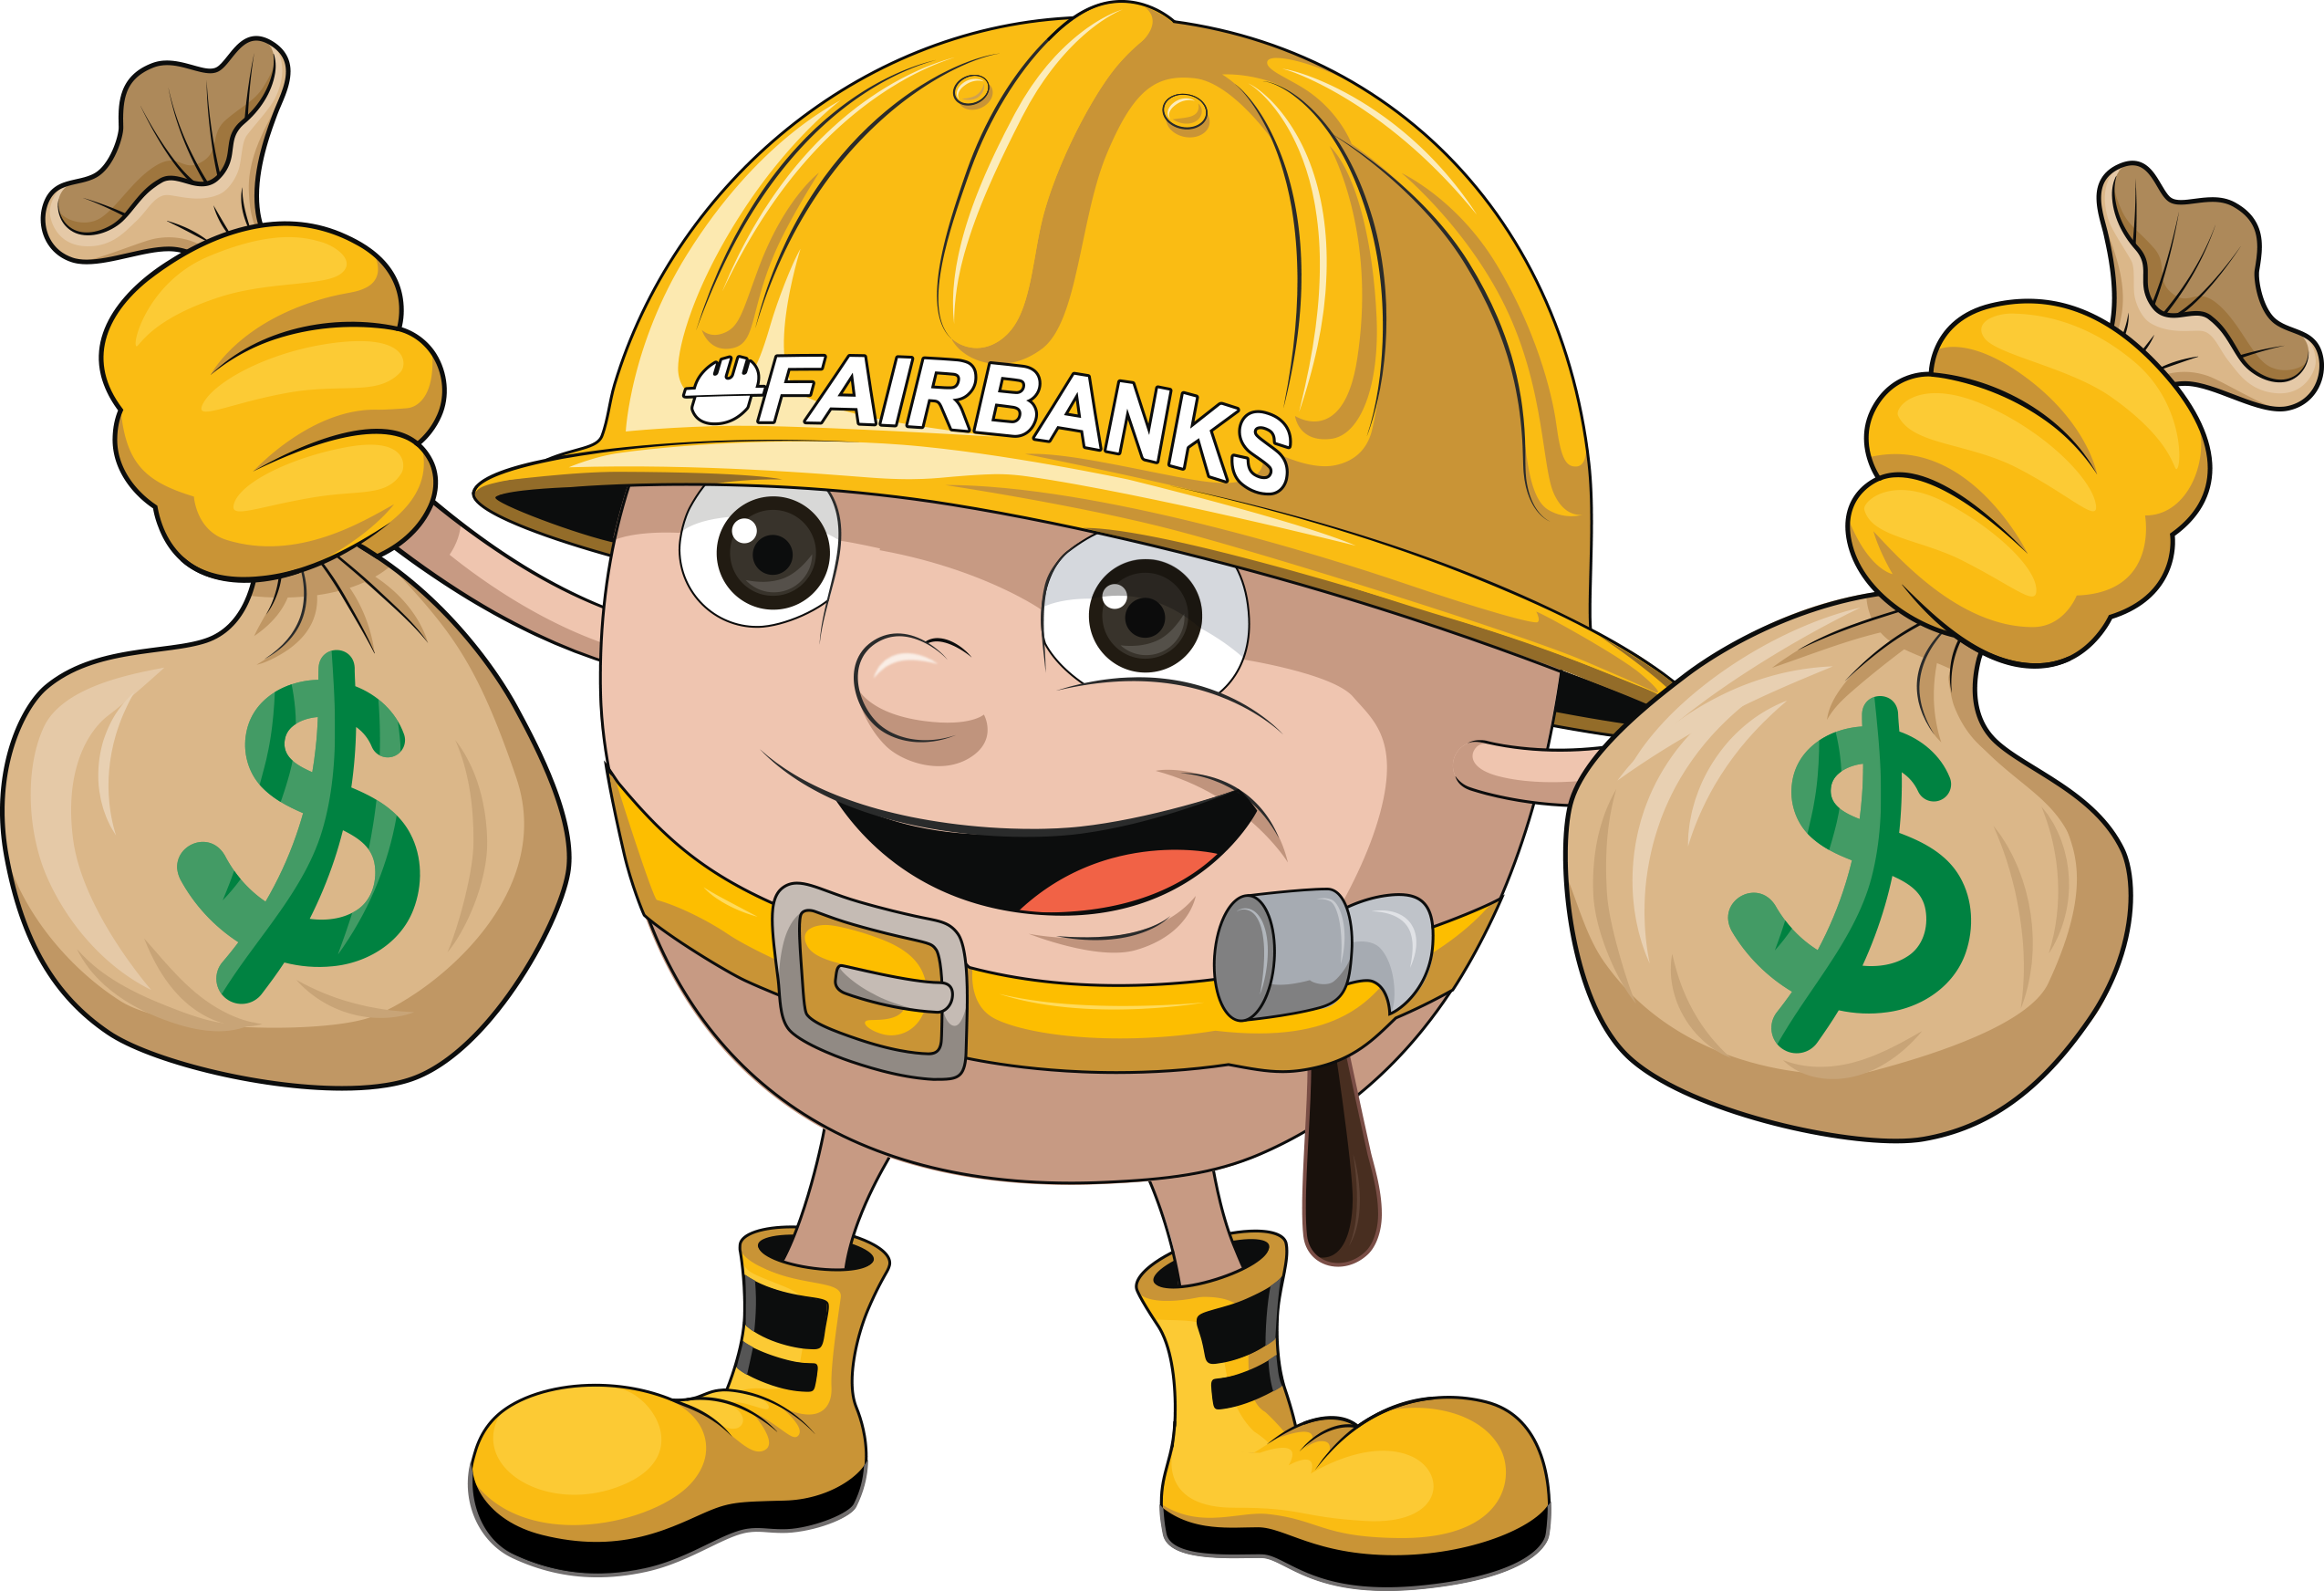 Cheap Delaware Contractor Insurance Mascot